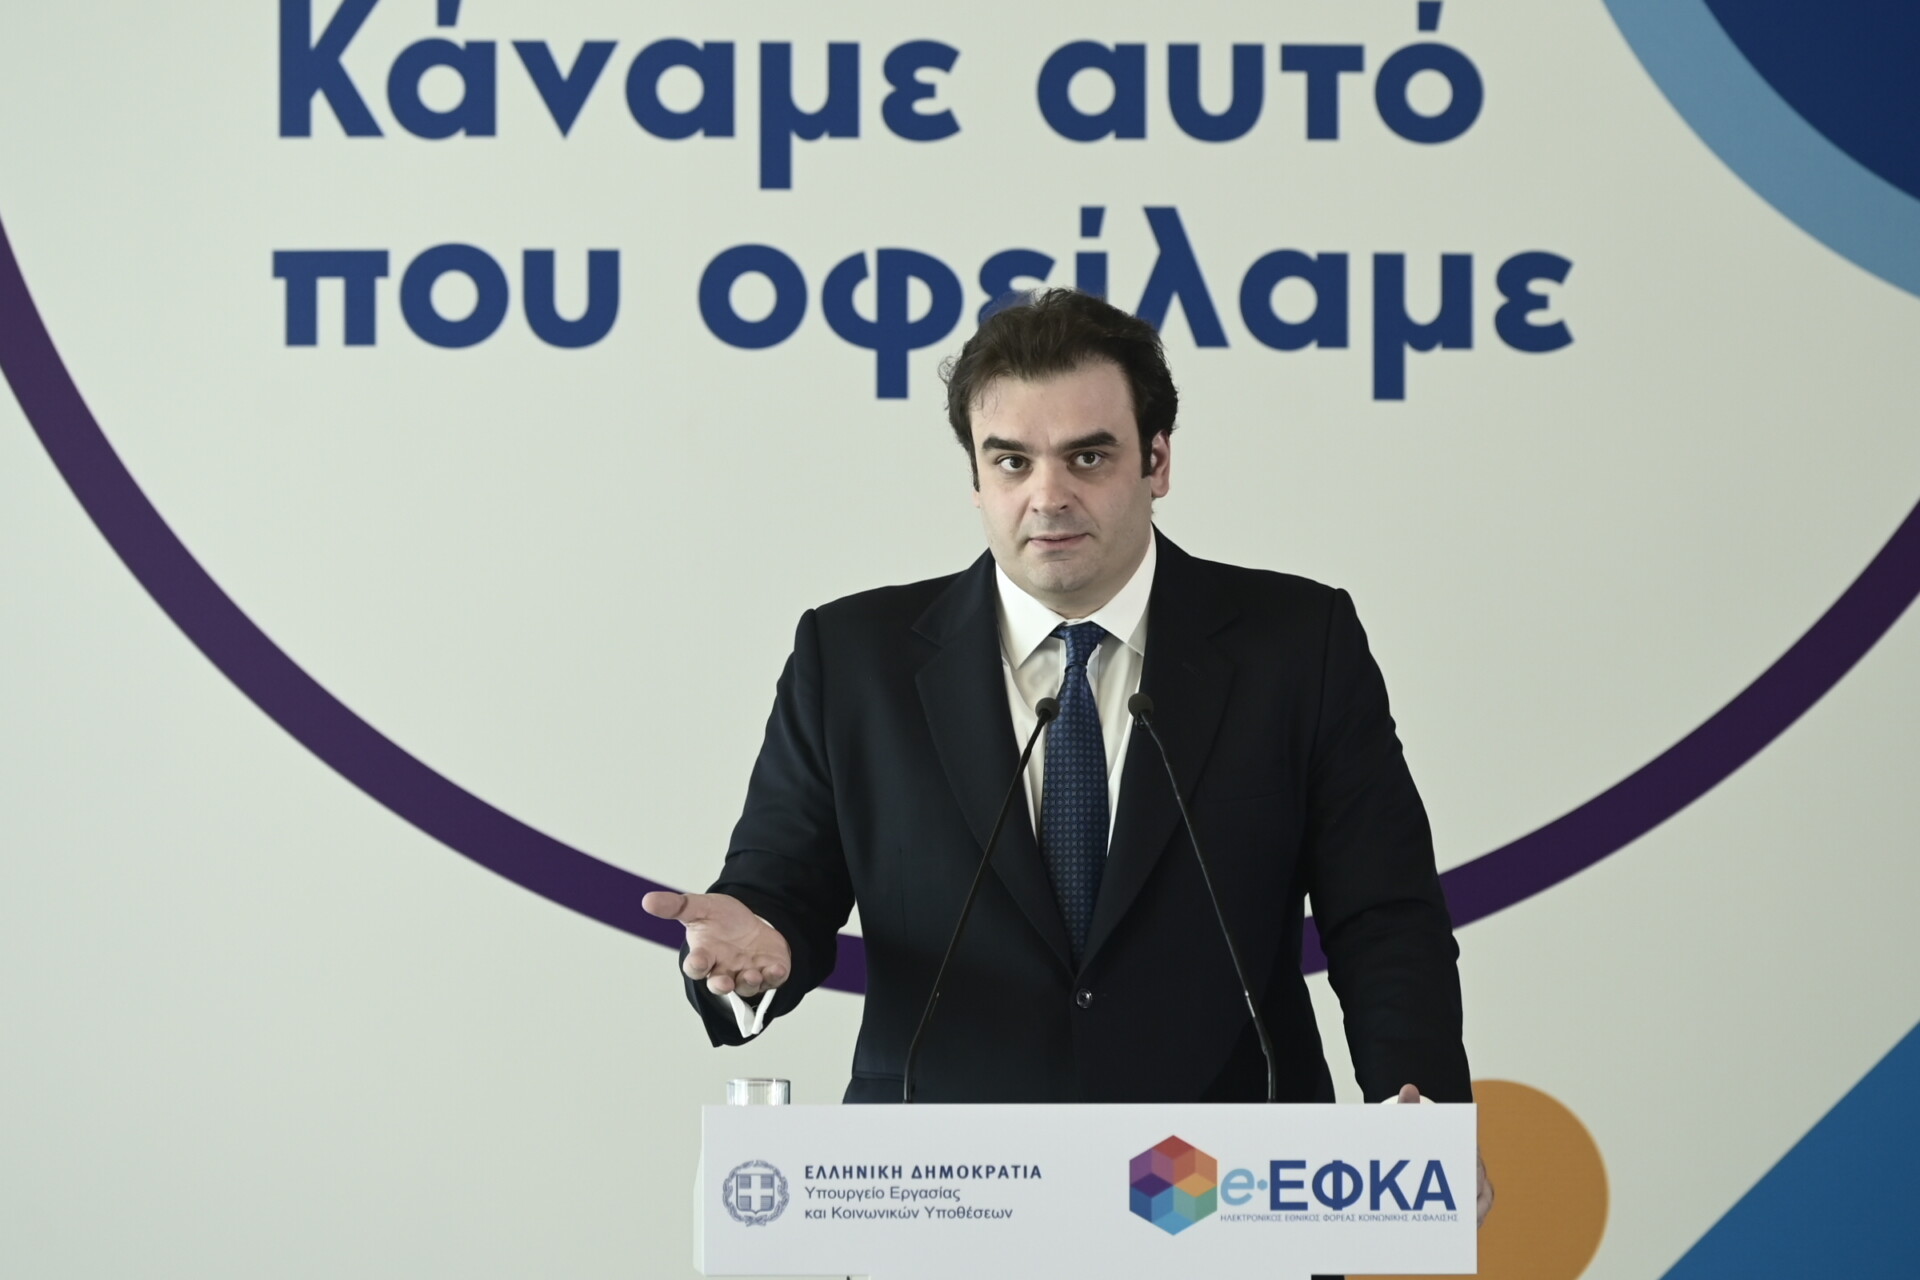 Ομιλία του Κυριάκου Πιερρακάκη σε εκδήλωση του υπουργείου Εργασίας και Κοινωνικών Υποθέσεων για την πορεία εκκαθάρισης των εκκρεμών συντάξεων, στο Κέντρο Πολιτισμού "Ελληνικός Κόσμος" @(ΜΙΧΑΛΗΣ ΚΑΡΑΓΙΑΝΝΗΣ/EUROKINISSI) (ΜΙΧΑΛΗΣ ΚΑΡΑΓΙΑΝΝΗΣ/EUROKINISSI)